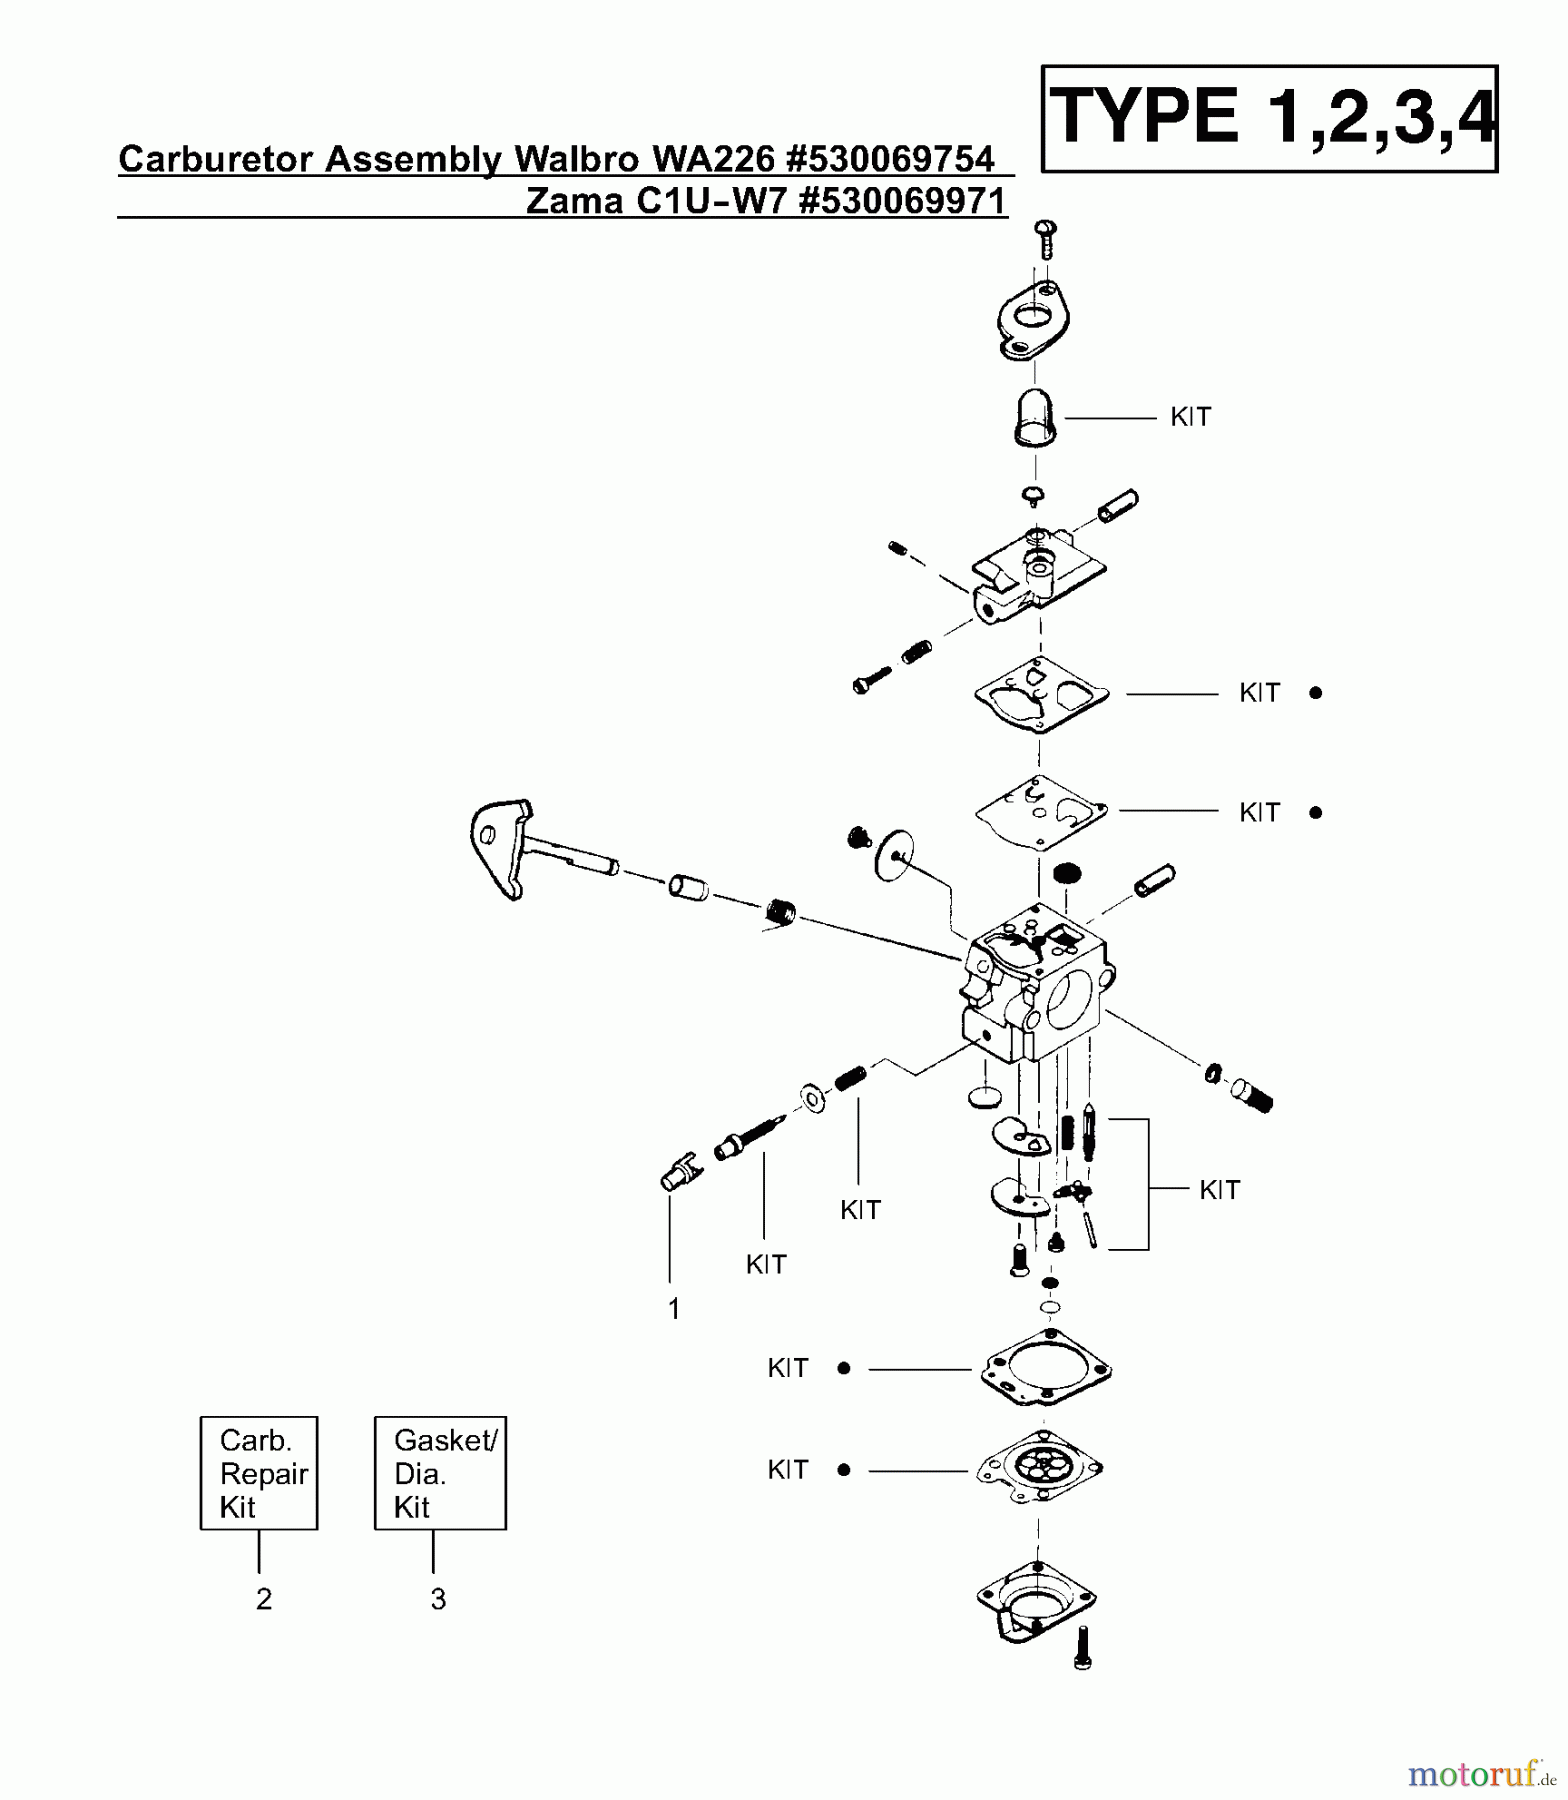  Poulan / Weed Eater Motorsensen, Trimmer XT400 (Type 4) - Weed Eater String Trimmer Carburetor Assembly (Walbro WA226) P/N 530069754, (Zama C1U-W7) P/N 530069971